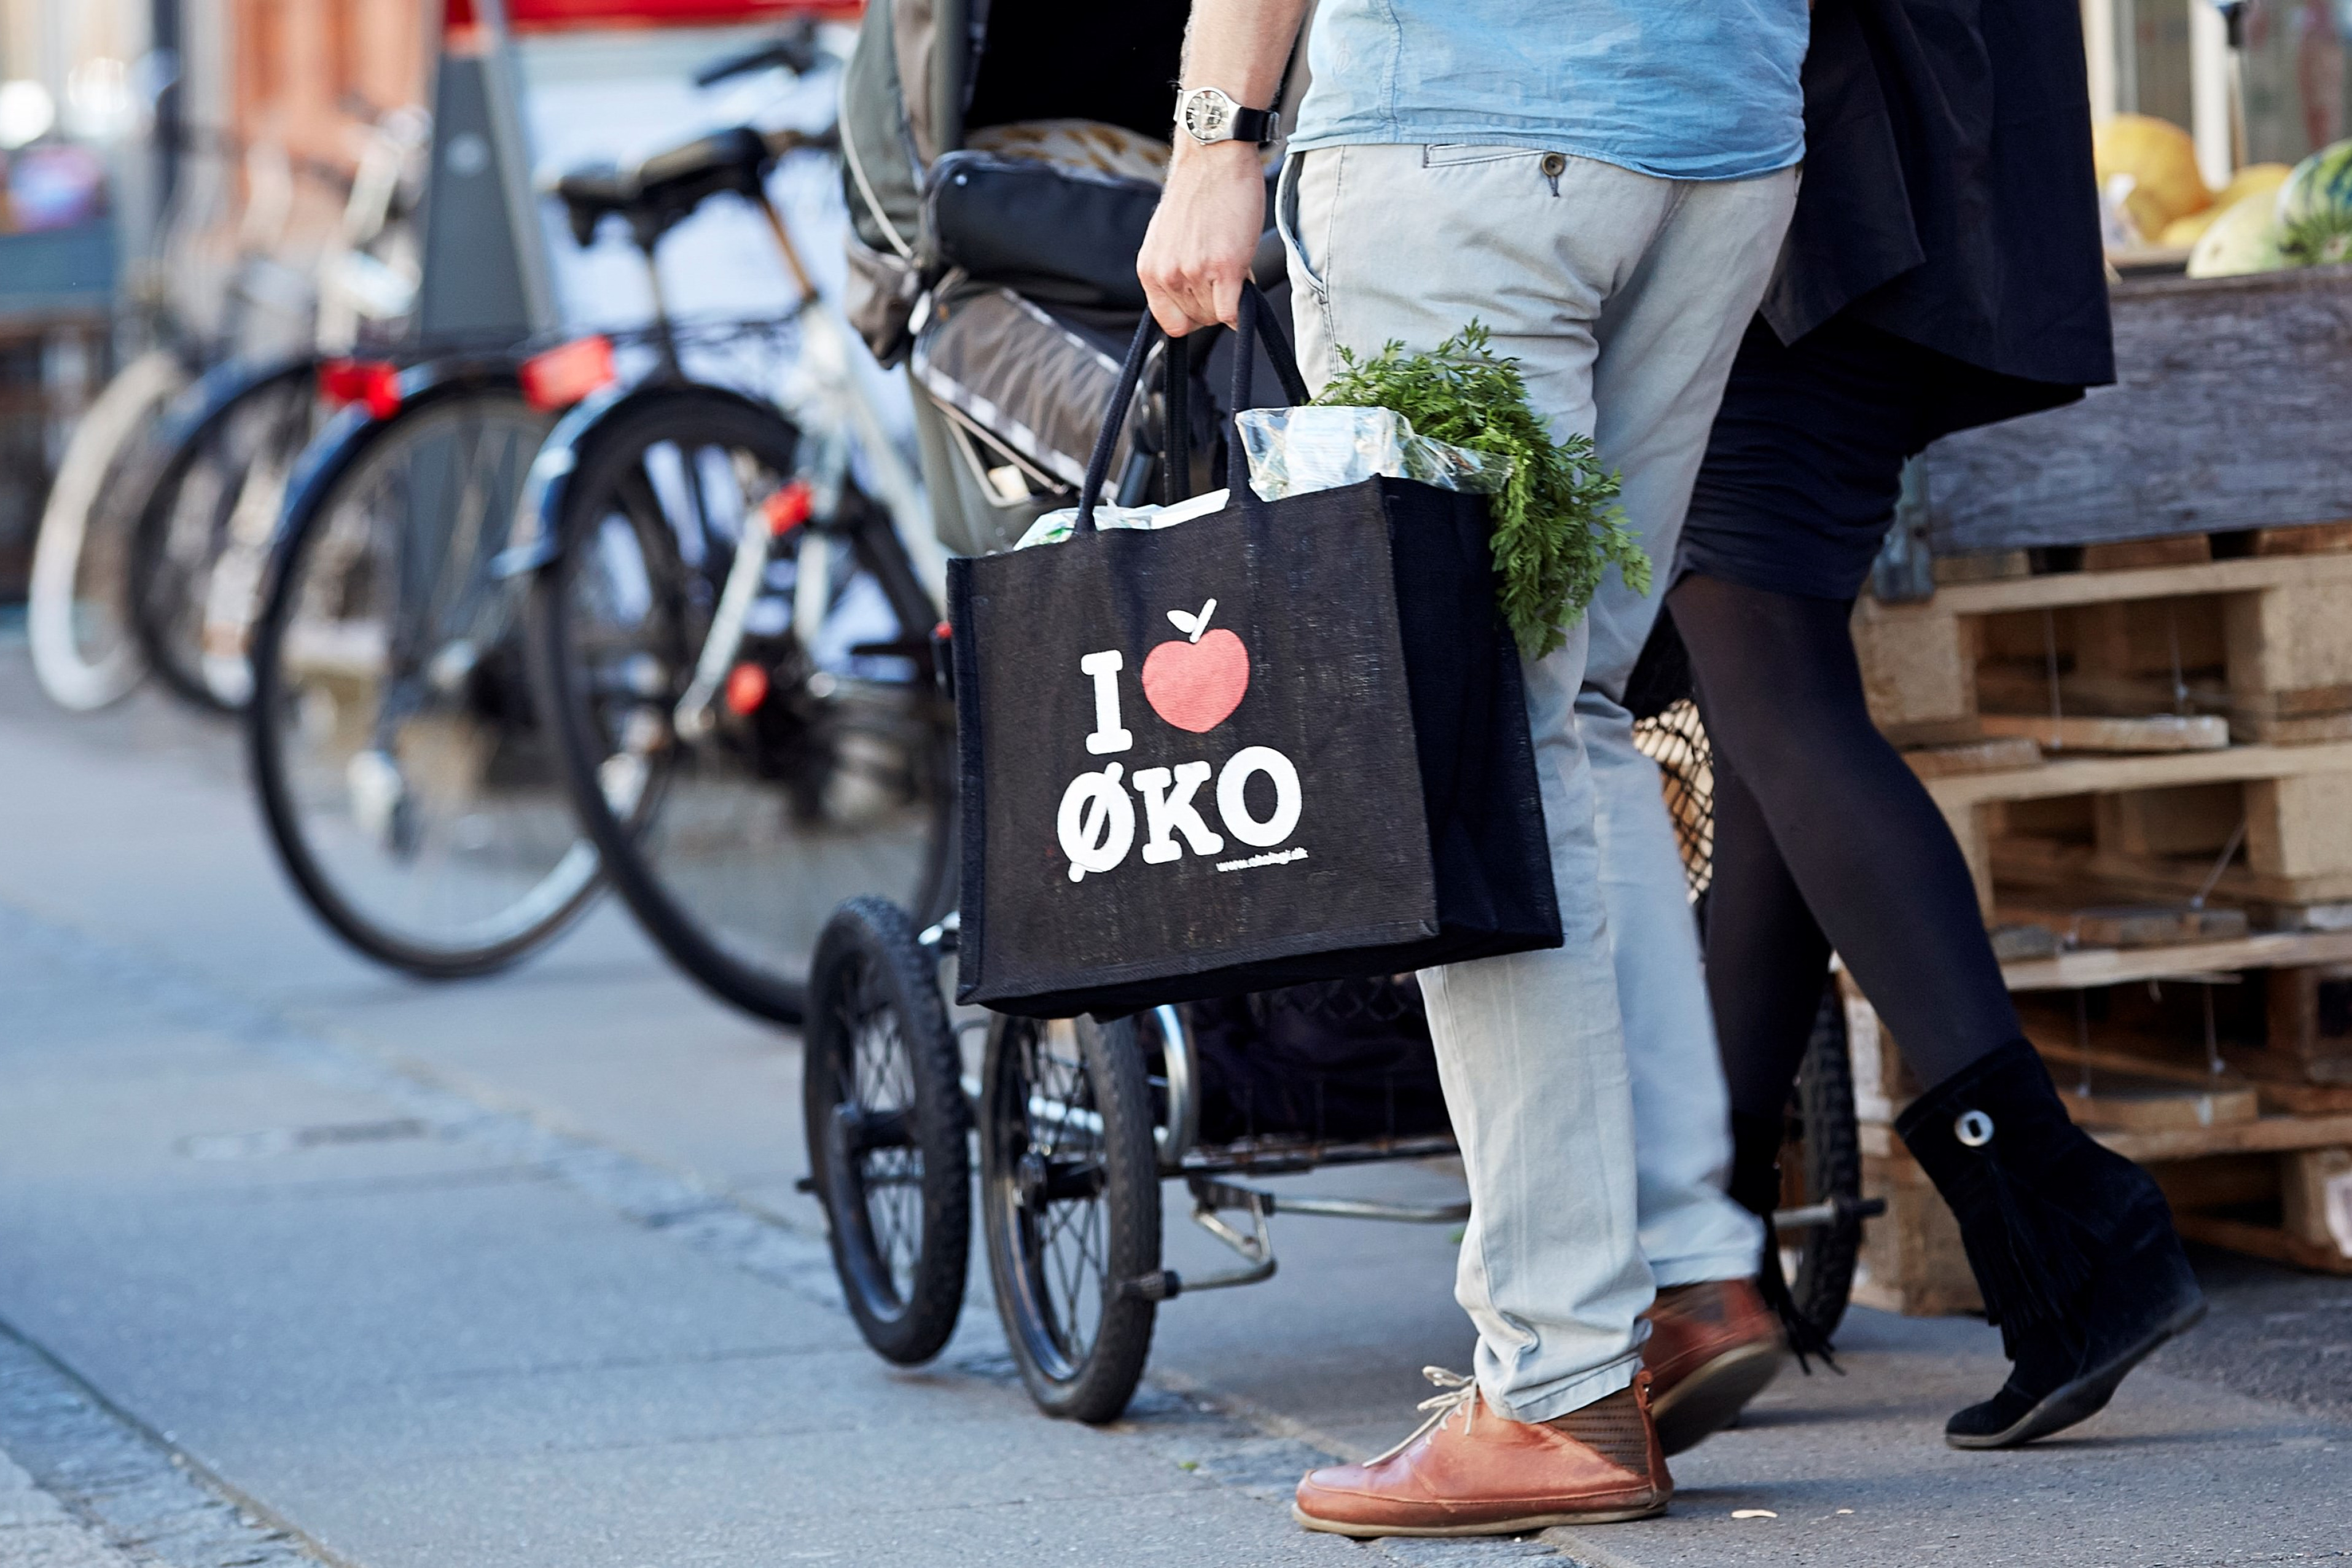 Et par går med et I Love Øko-net på vej ud af et supermarked